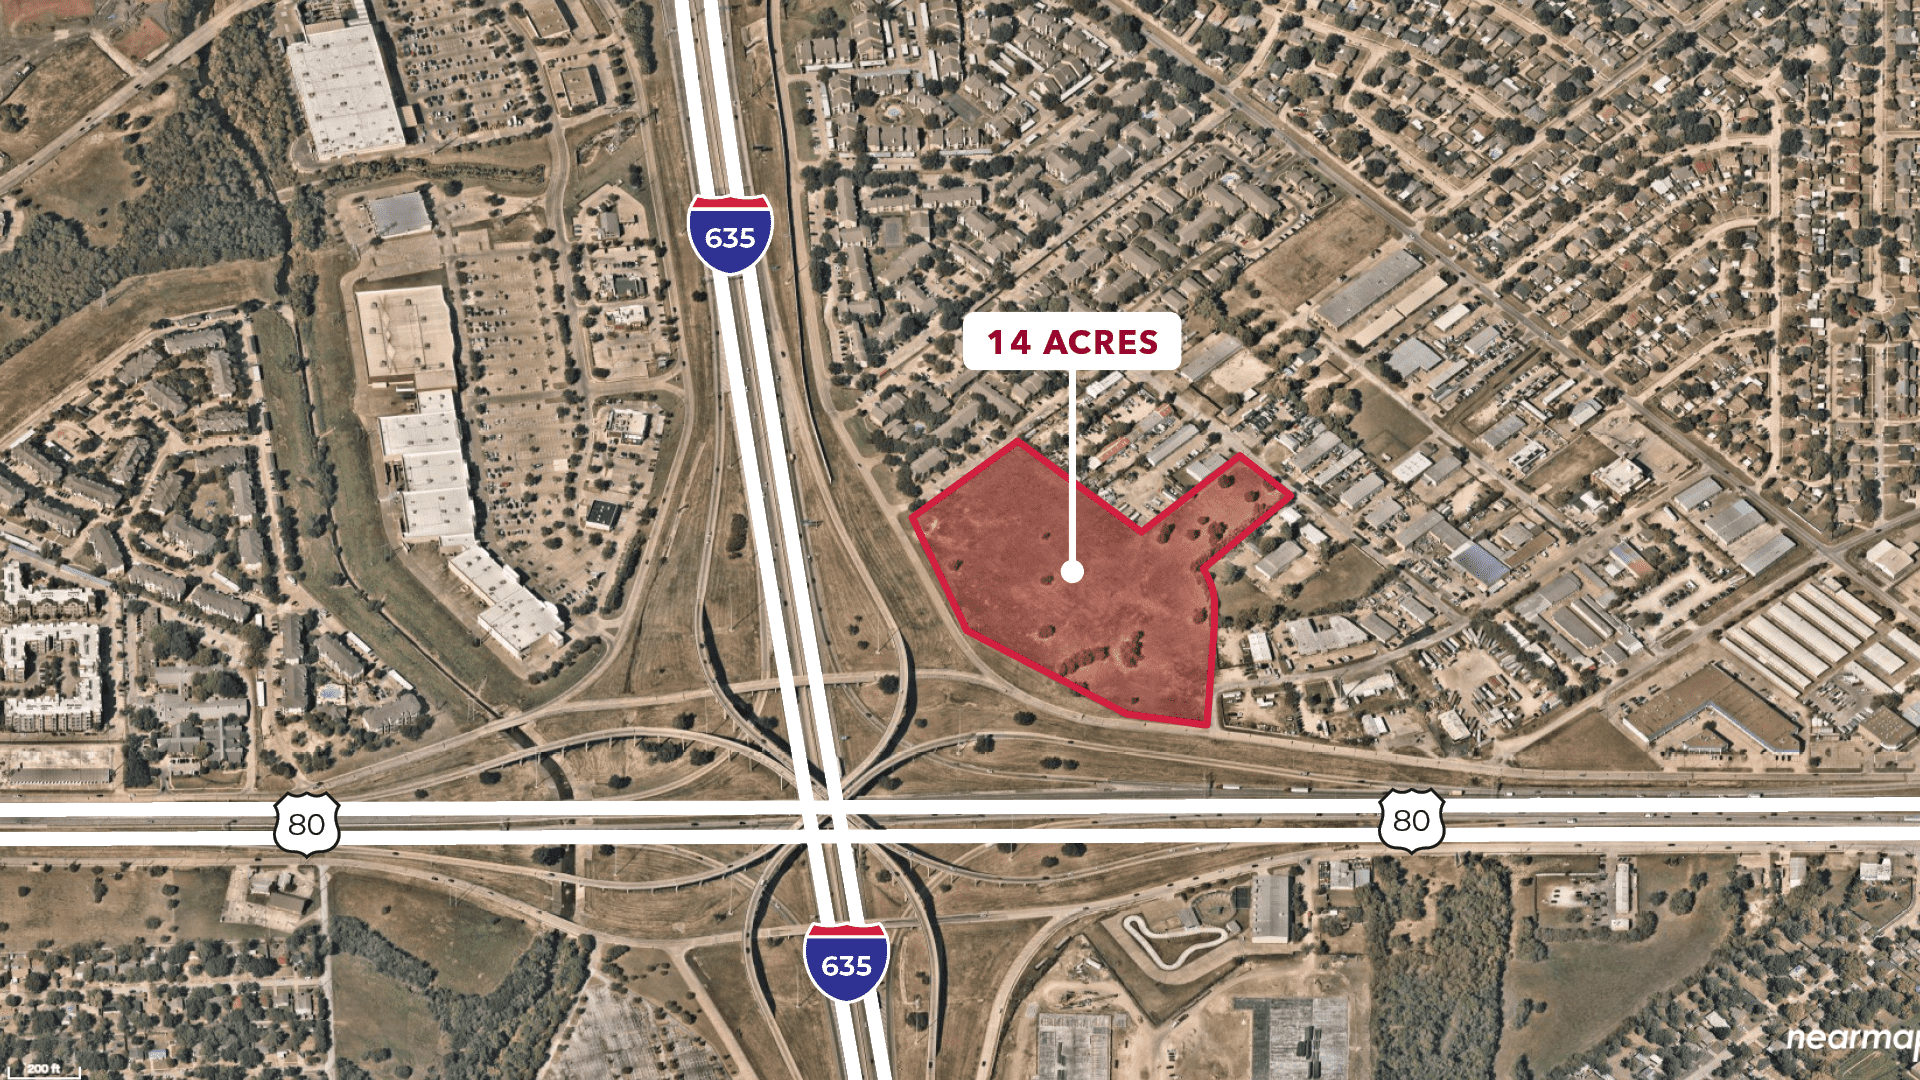 Lee & Associates Dallas Fort Worth Negotiates a 14 Acre Land Sale Transaction